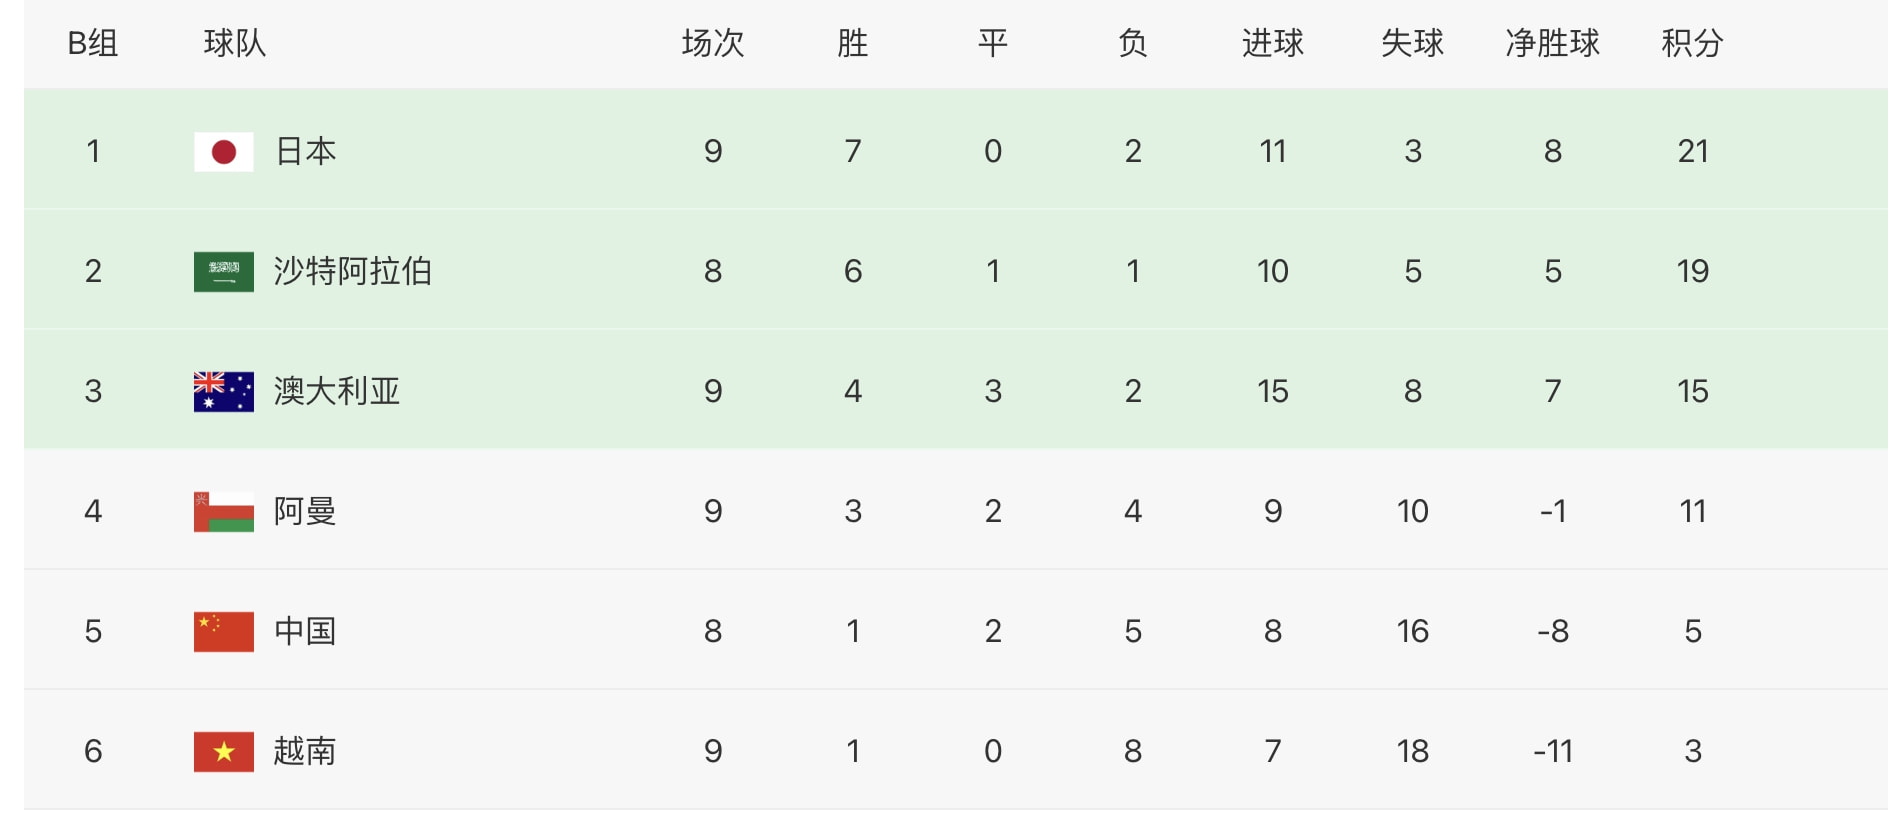 越南0-1阿曼，中国队再收利好，战沙特无压力，小组垫底概率减小